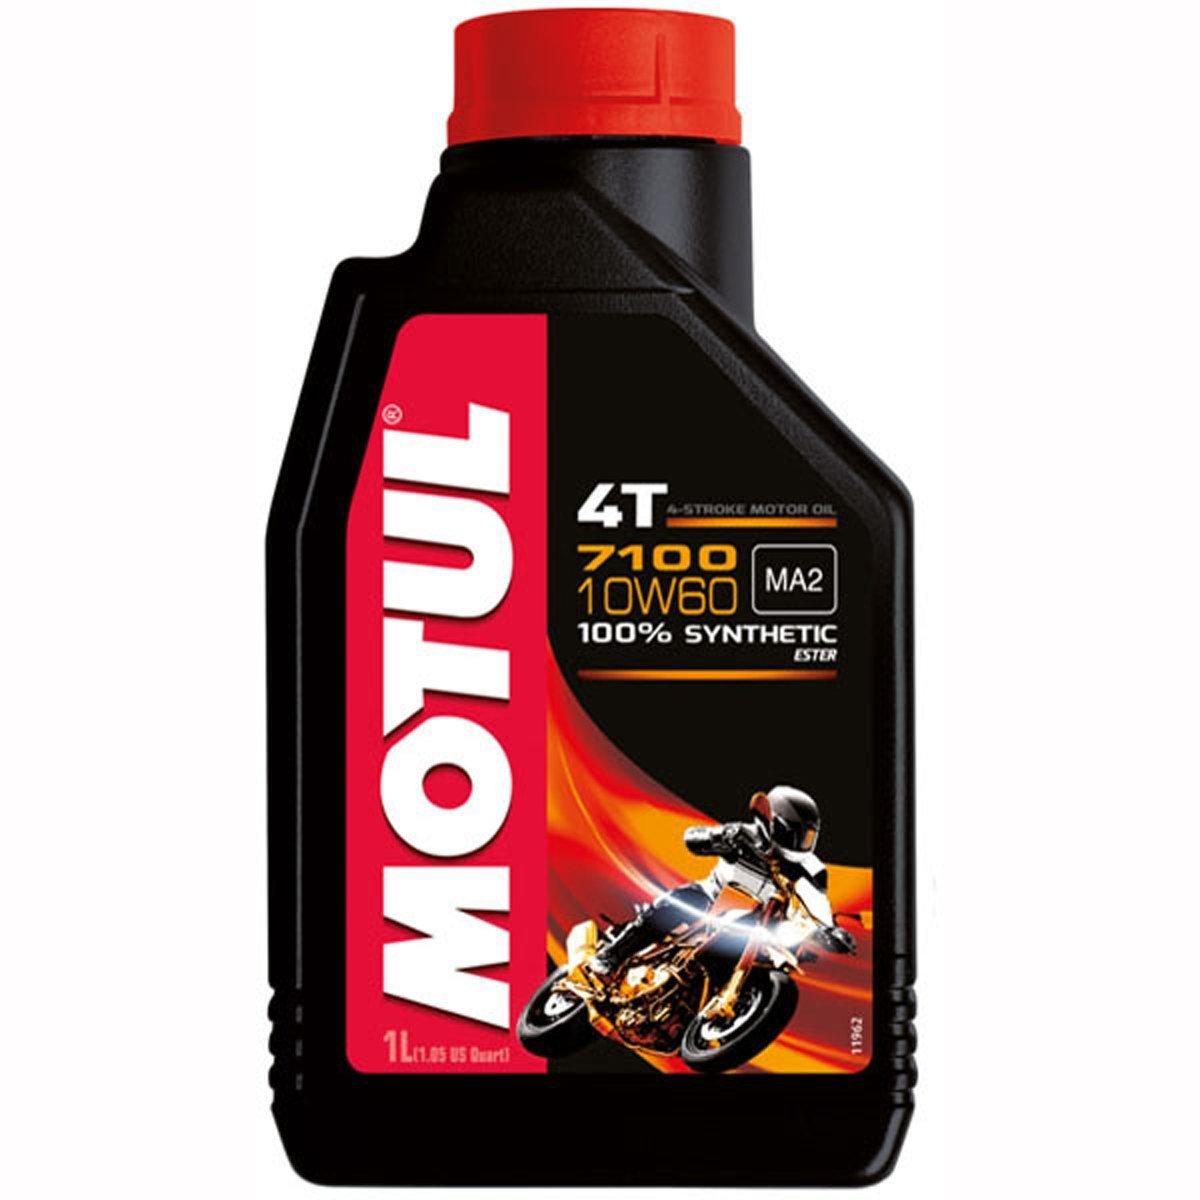 Motul Fully Synthetic 7100 10W60 4T Oil Black 4L